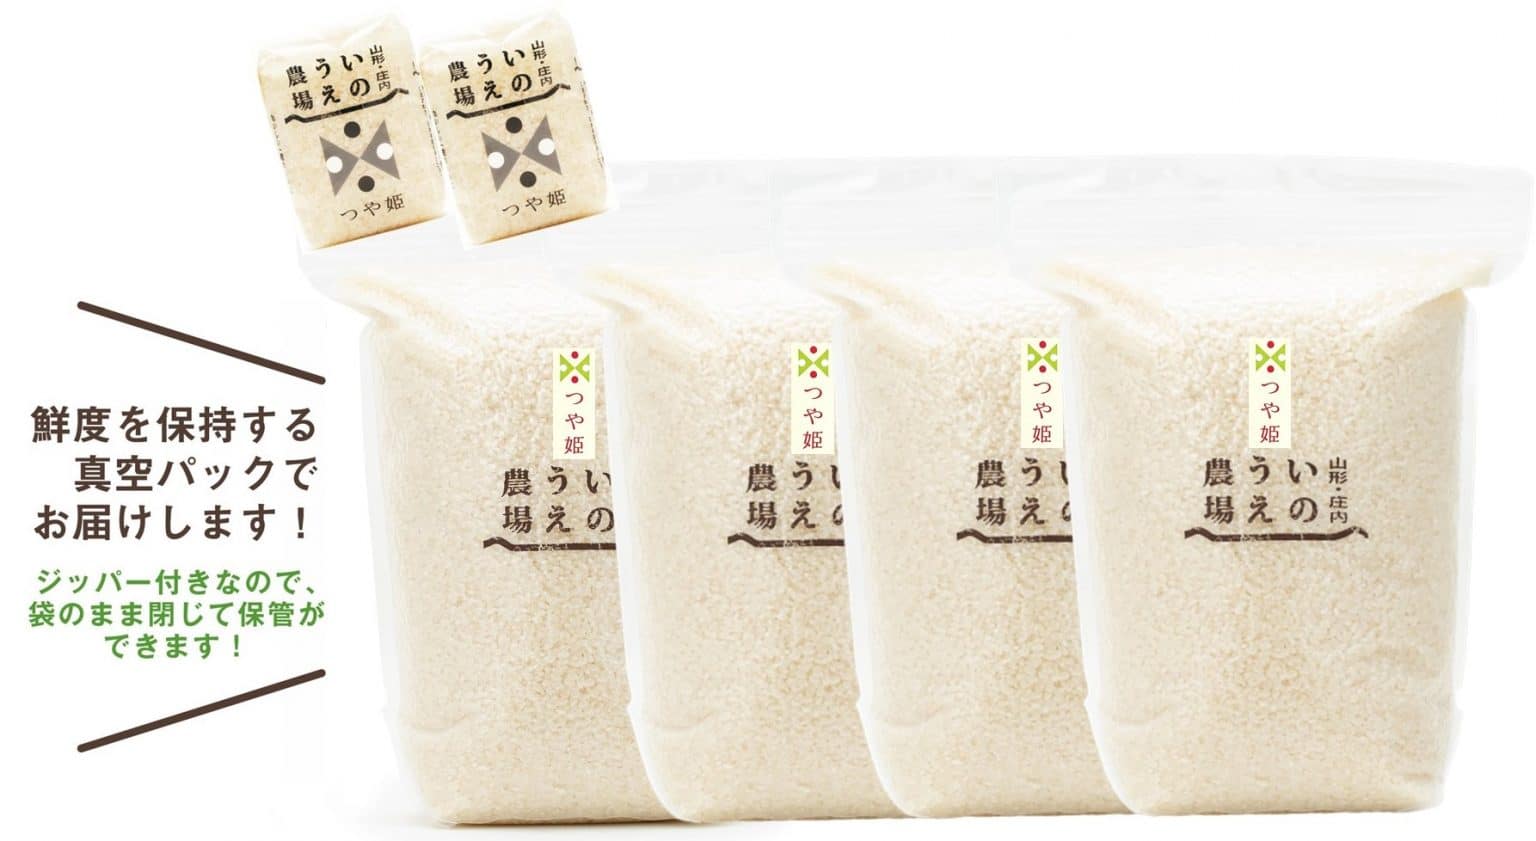 つや姫ｾｯﾄ つや姫2 5kg 4 2合 300g 2 井上農場 特別栽培米 送料無料 井上農場 公式サイト